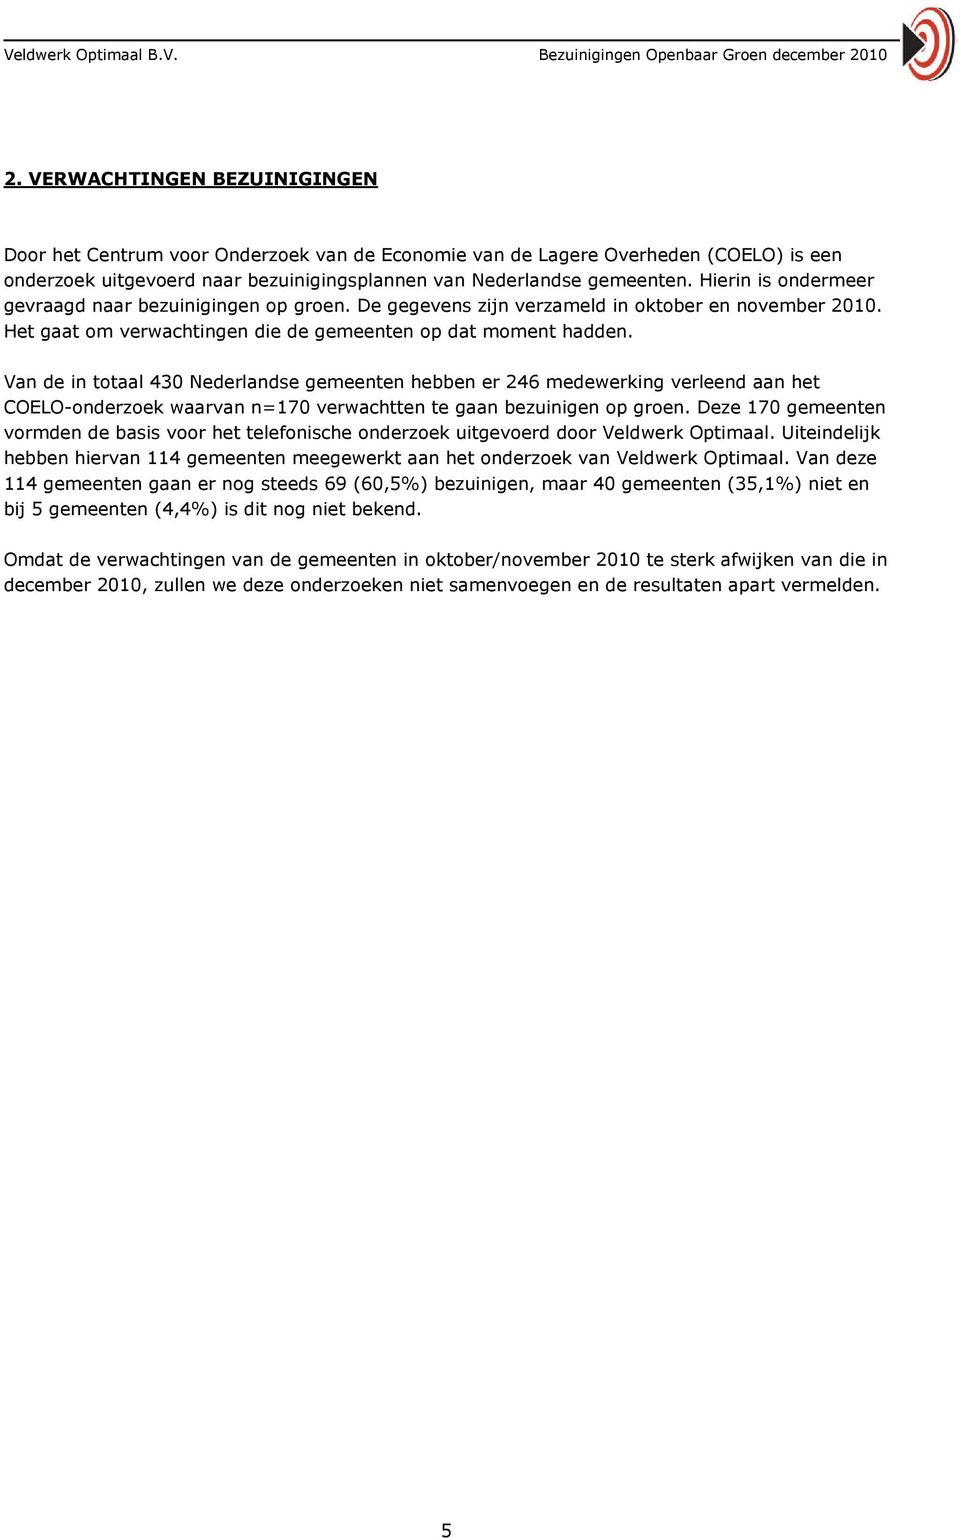 Van de in totaal 430 Nederlandse gemeenten hebben er 246 medewerking verleend aan het COELO-onderzoek waarvan n=170 verwachtten te gaan bezuinigen op groen.